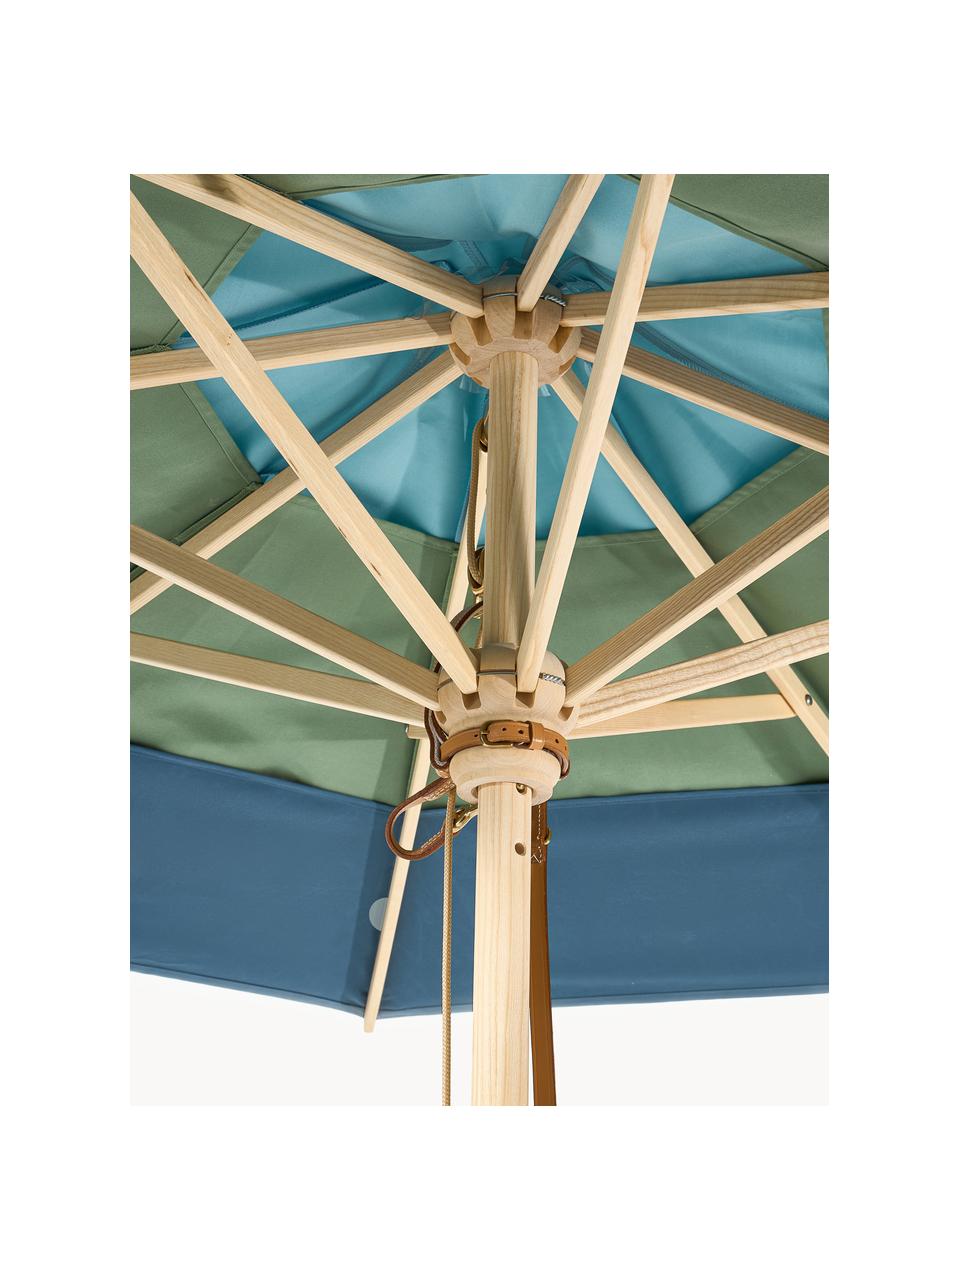 Runder Sonnenschirm Classic, verschiedene Grössen, Gestell: Eschenholz, lackiert, Blautöne, Grün, Helles Holz, Ø 210 x H 251 cm